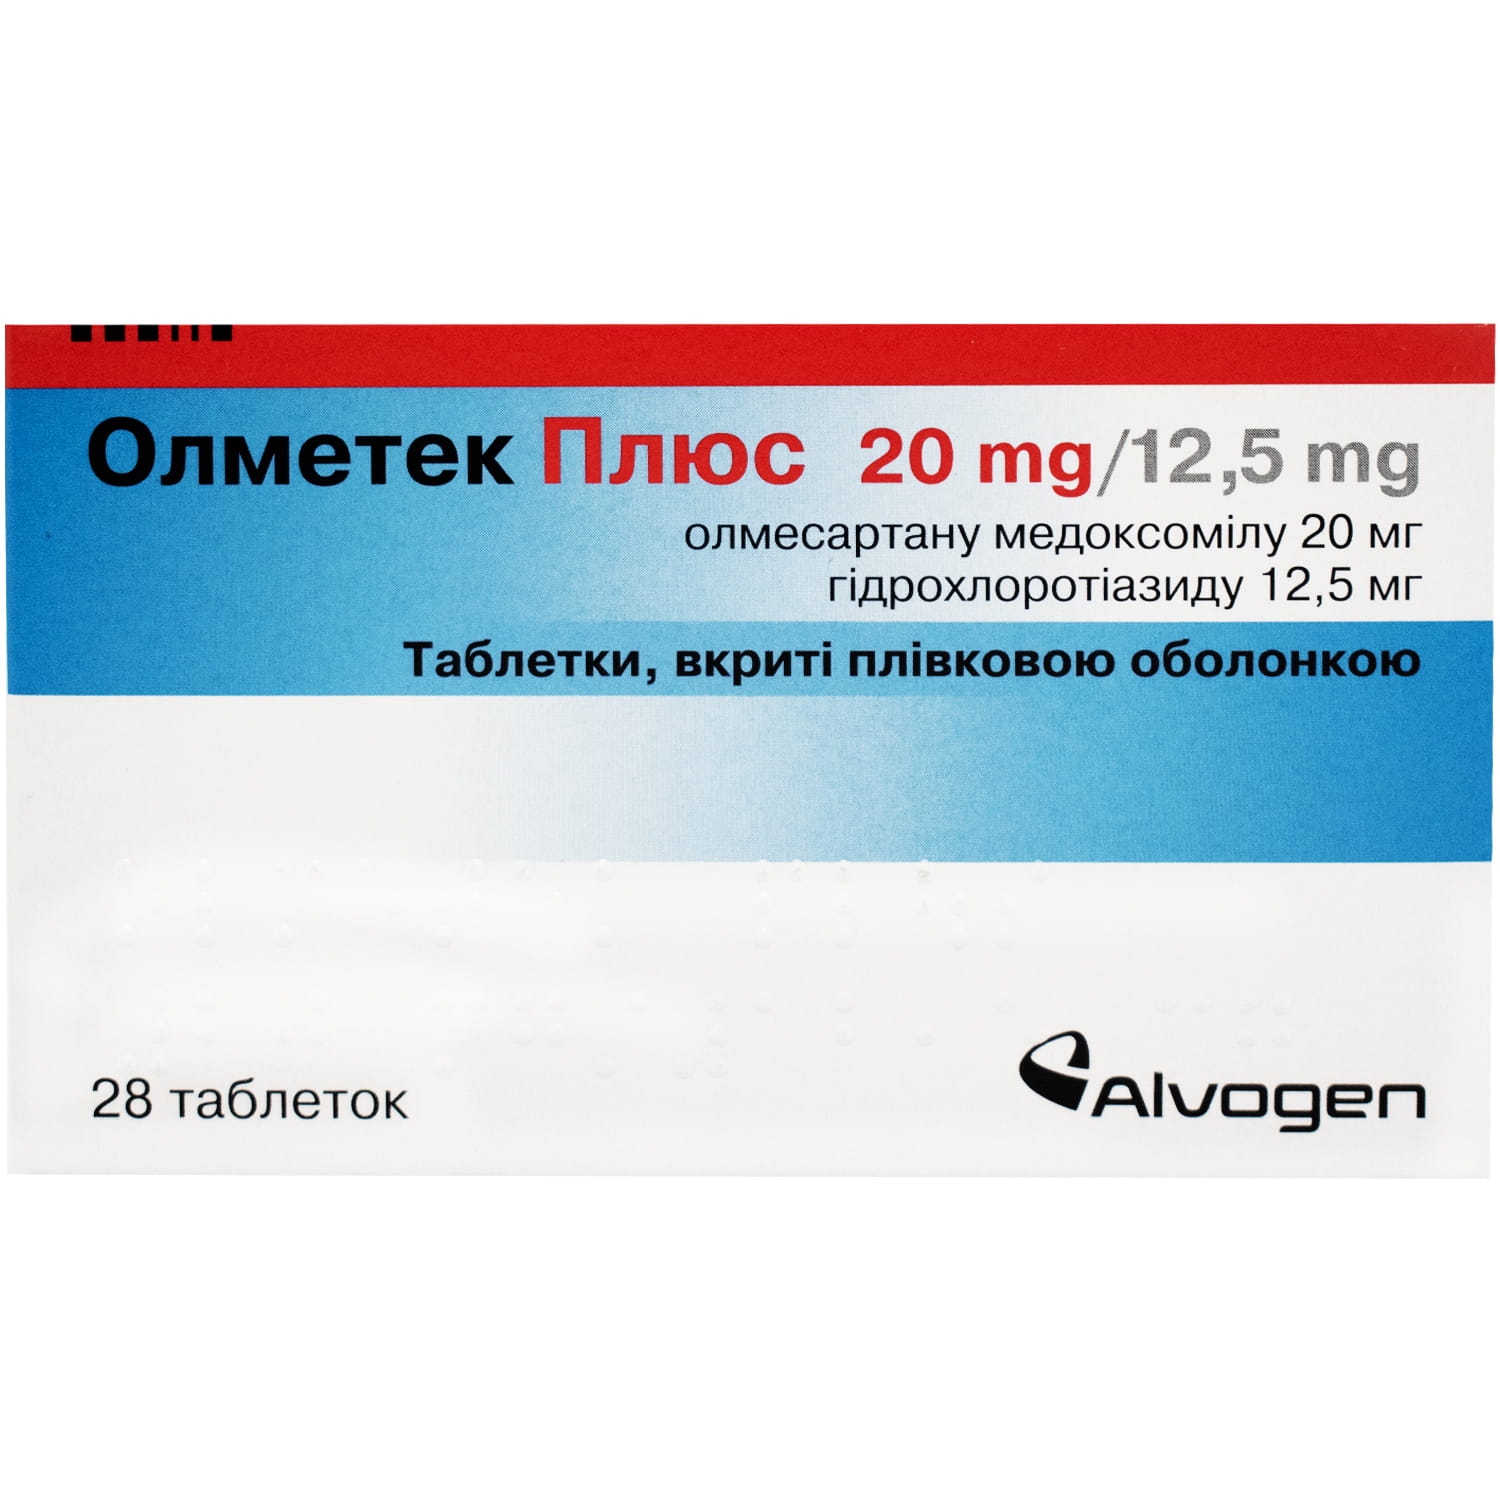 Олметек Плюс таблетки, 20 мг/12,5 мг, 28 шт.